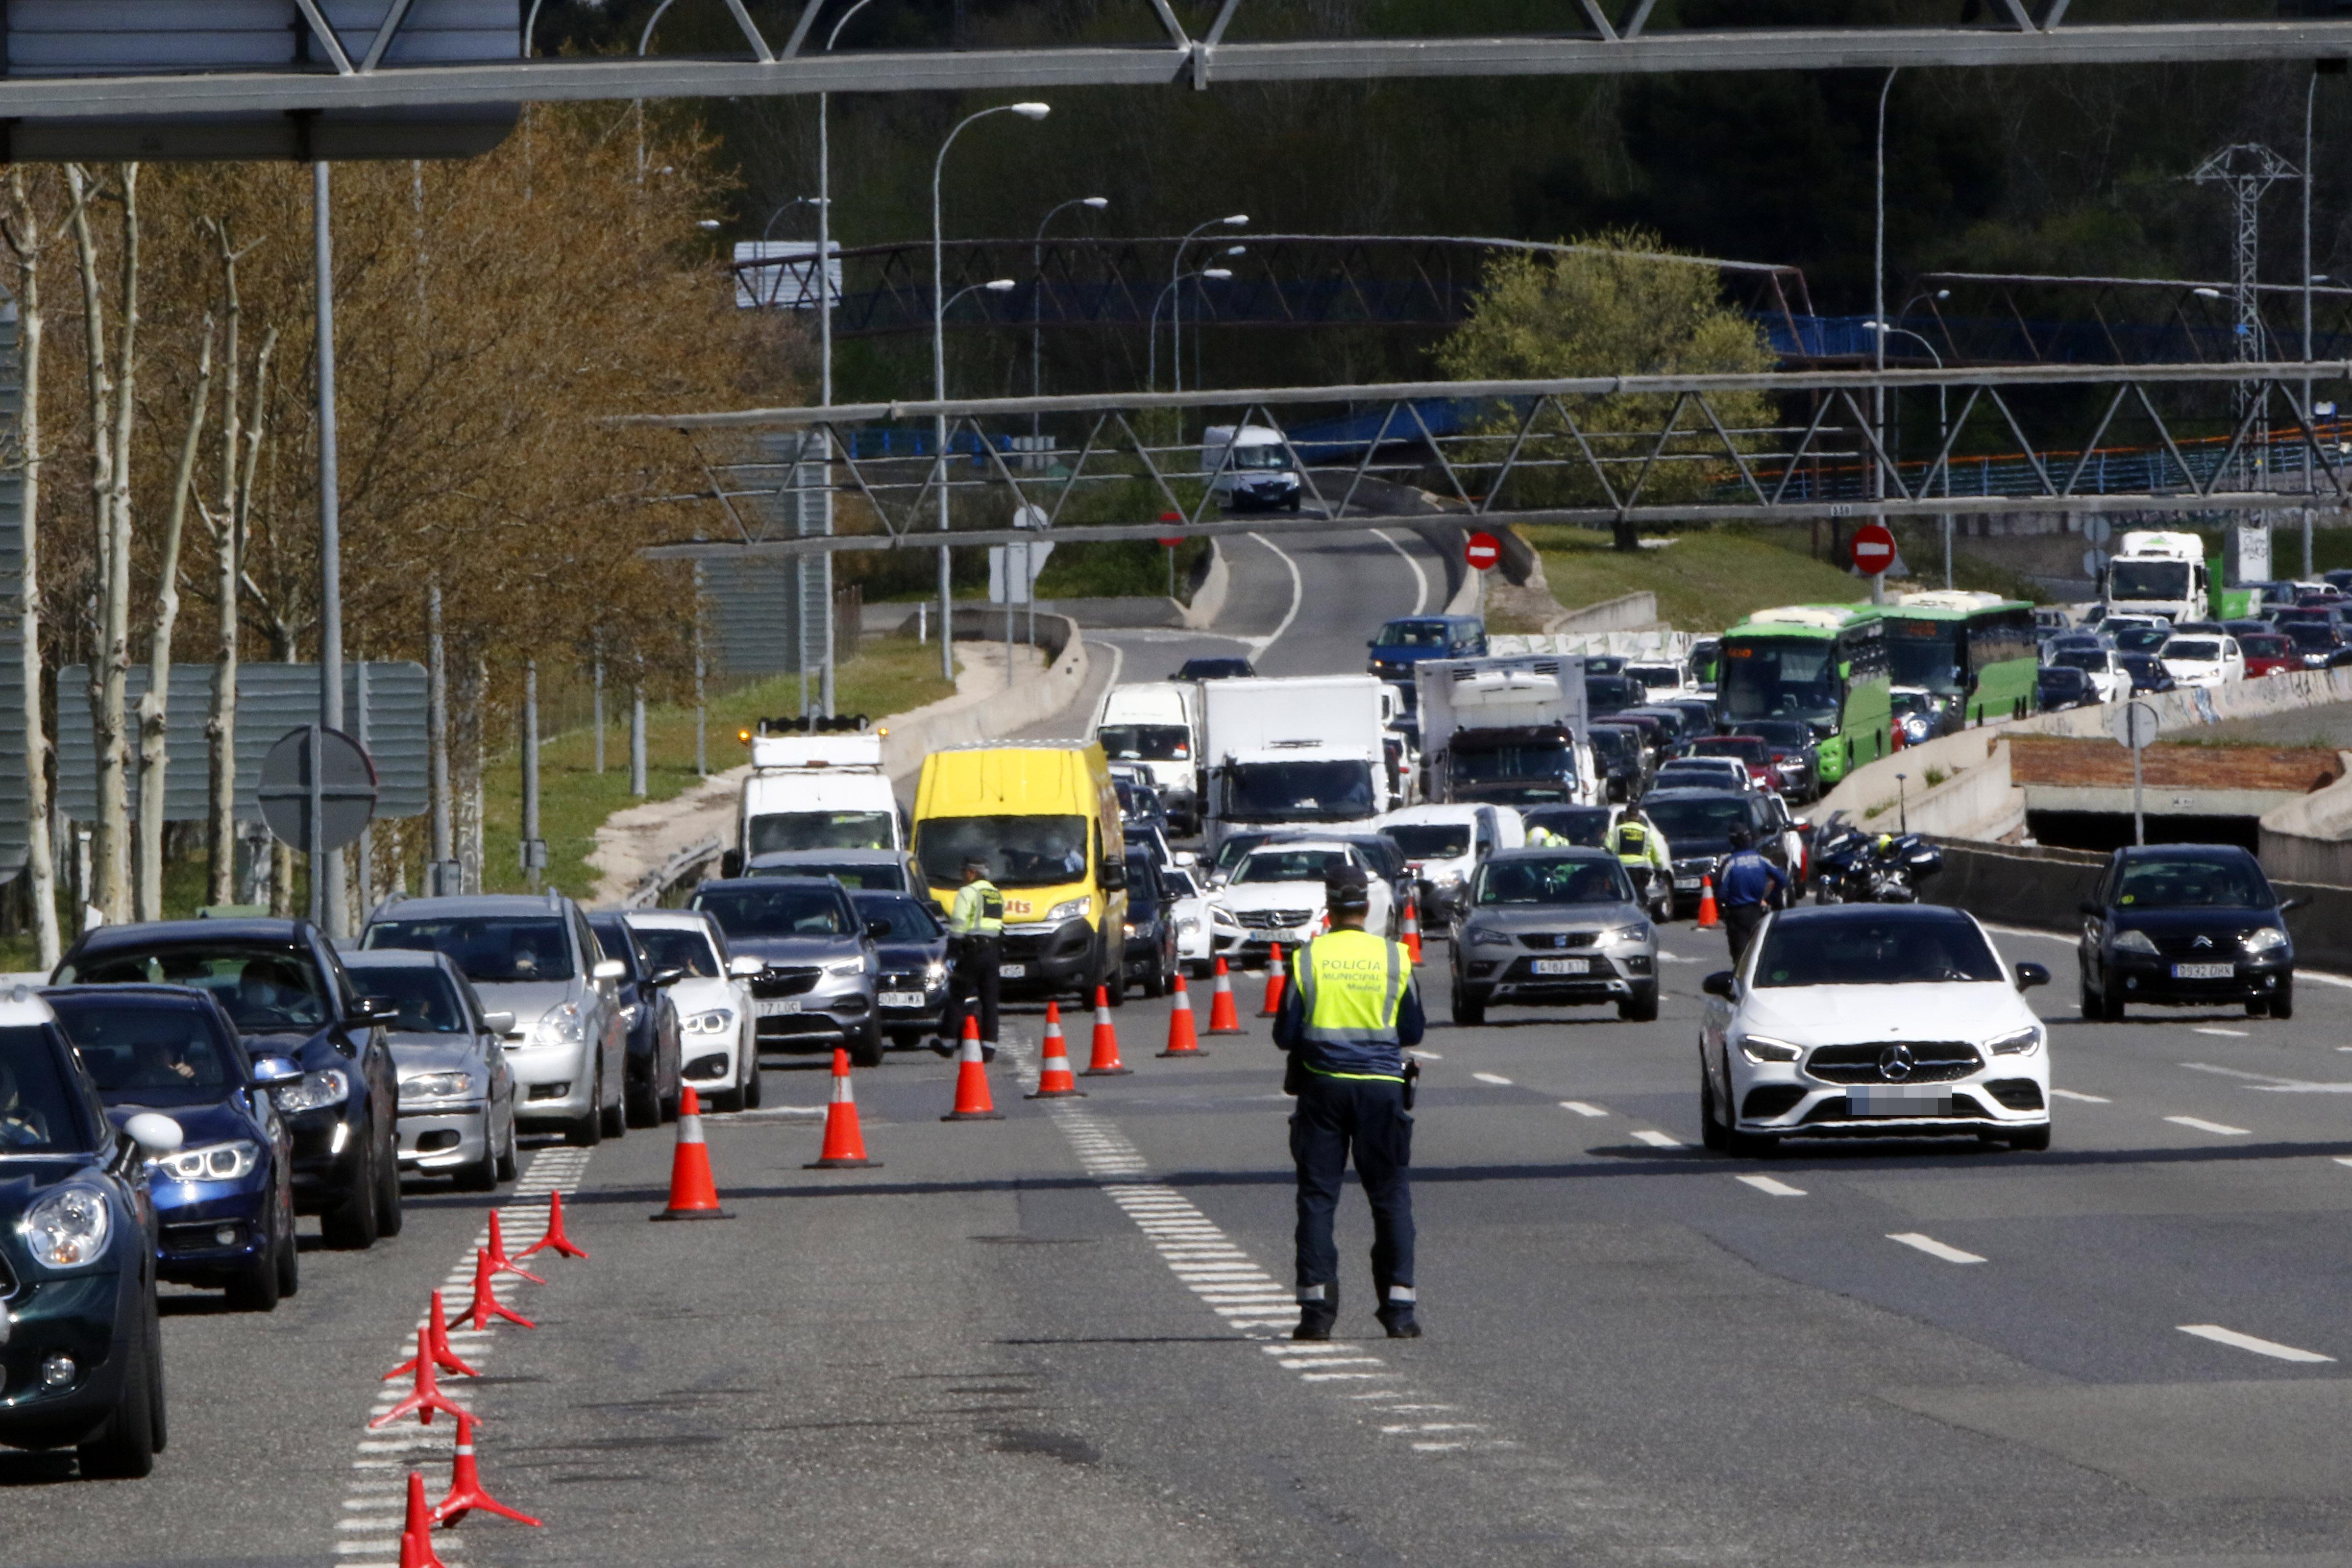 Retenciones en la autopista A6 tras intensificarse controles policiales por el estado alarma. EP